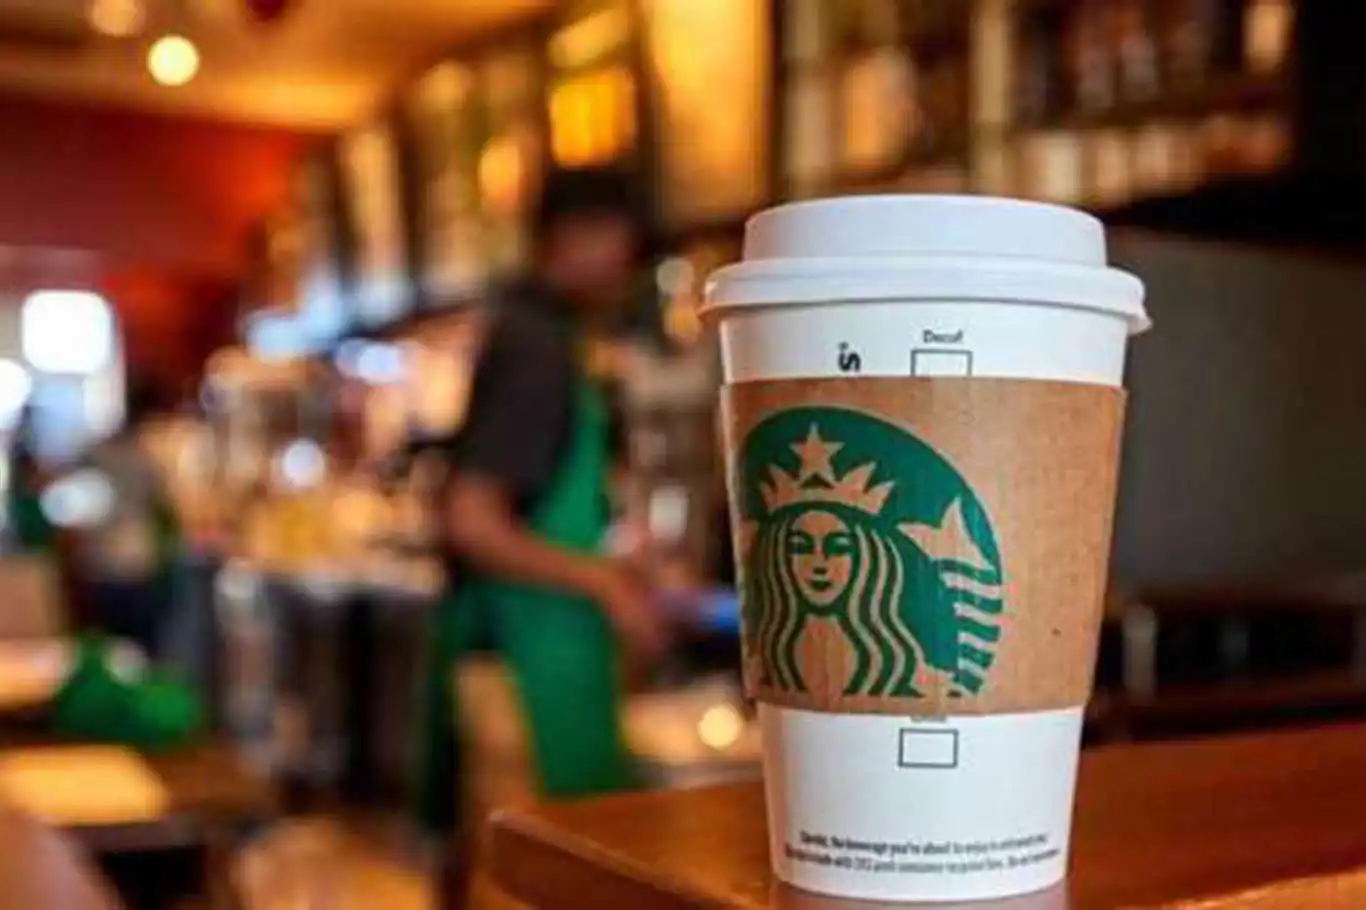 Boykot sonrası Starbucks’ın zararı açıklandı